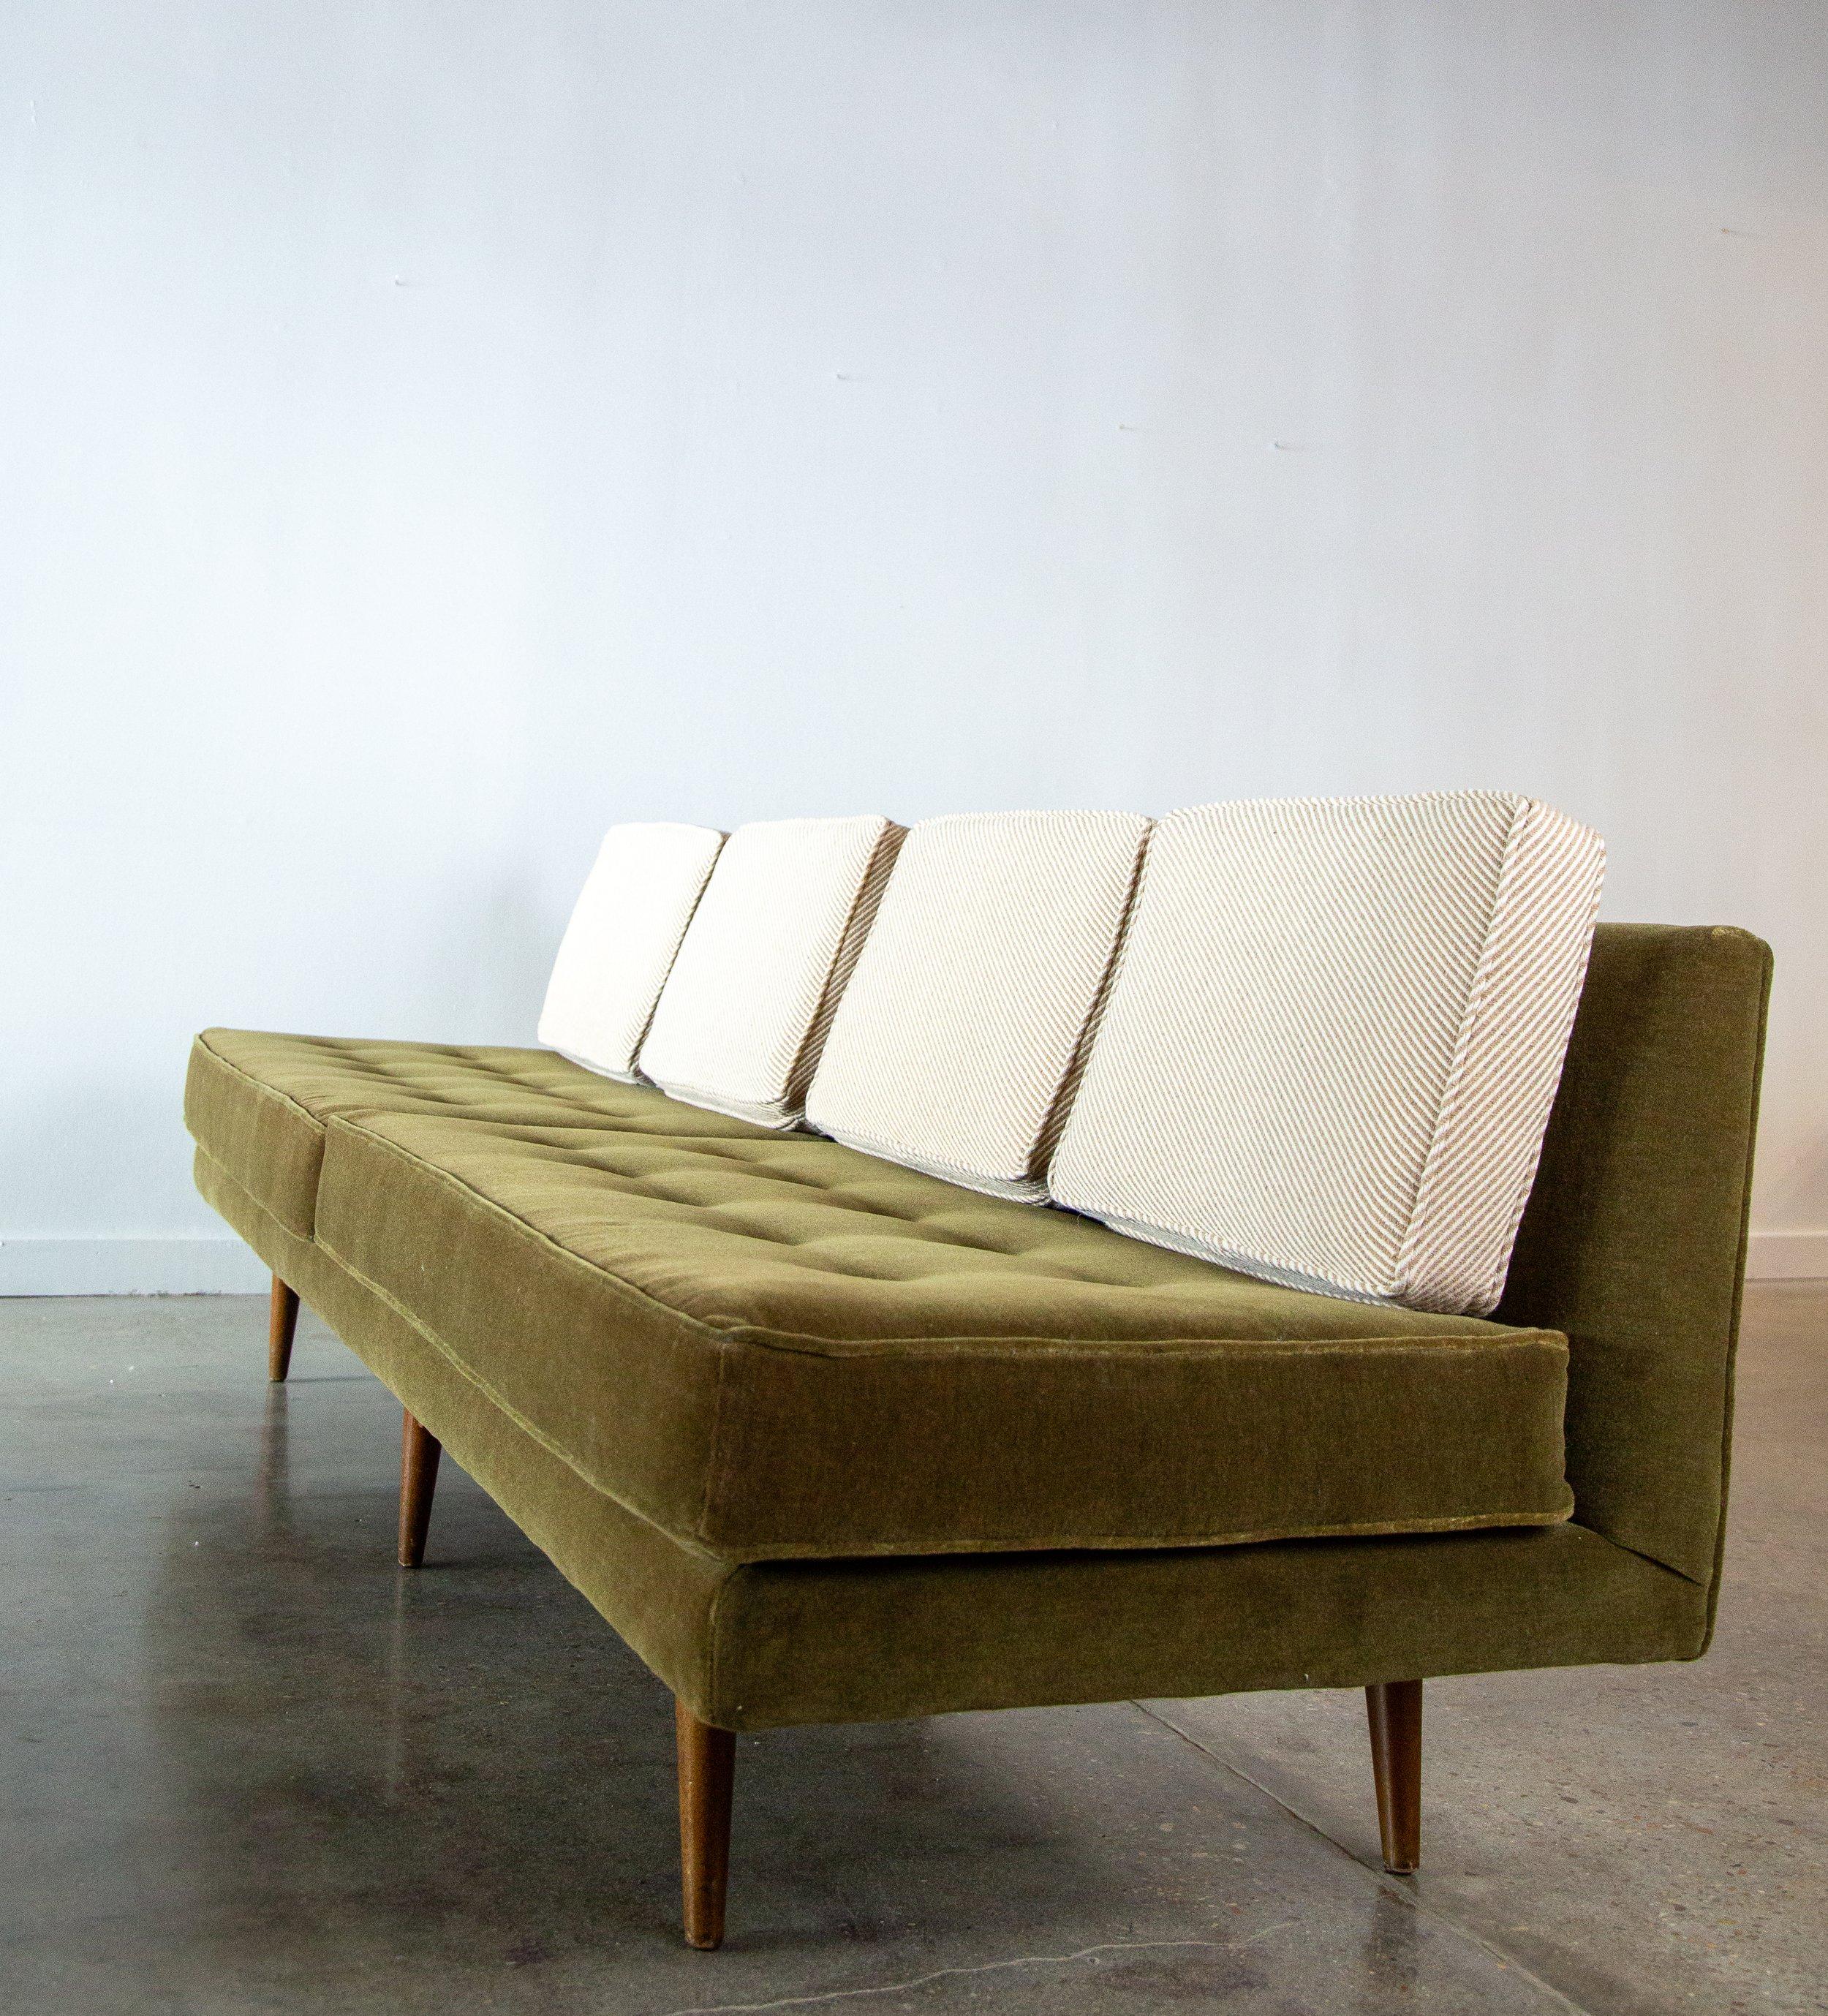 Un canapé sans accoudoir emblématique des années 1950, conçu par Edward Wormley pour Dunbar Furniture, modèle 5526. Remeublé dans une base en mohair vert avec des coussins amples en laine à rayures diagonales neutres.  Une forme très aérienne, le